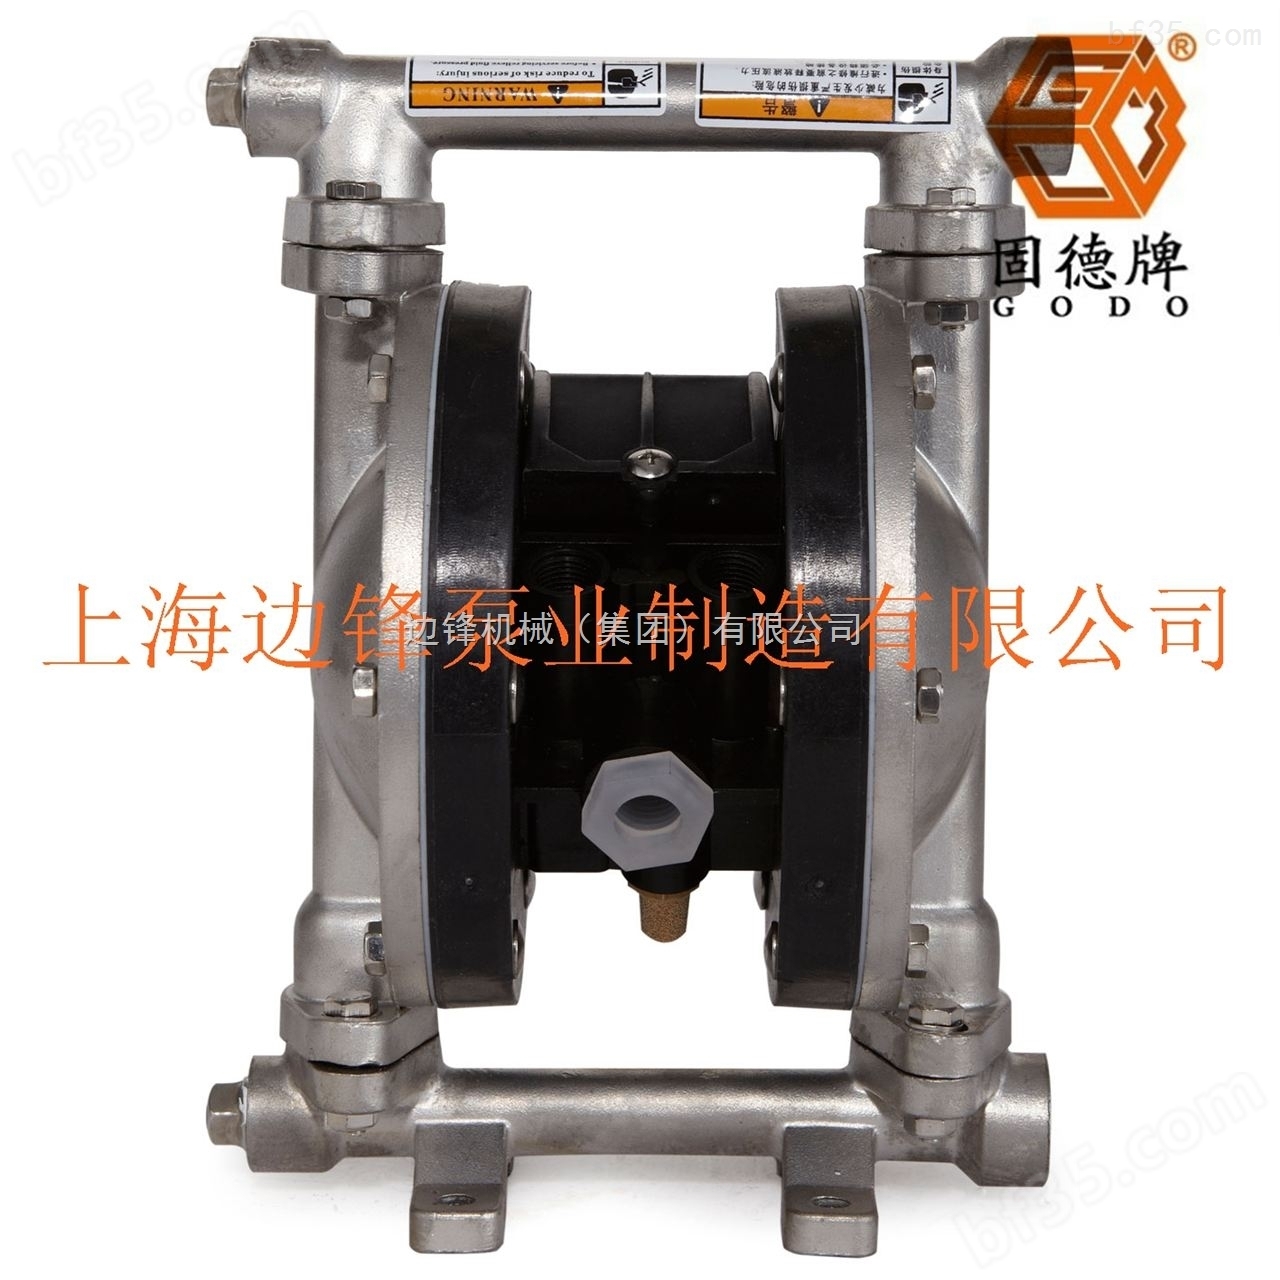 *广州边锋泵业固德牌GODO气动隔膜泵胶水涂料输送泵QBY3-15LF